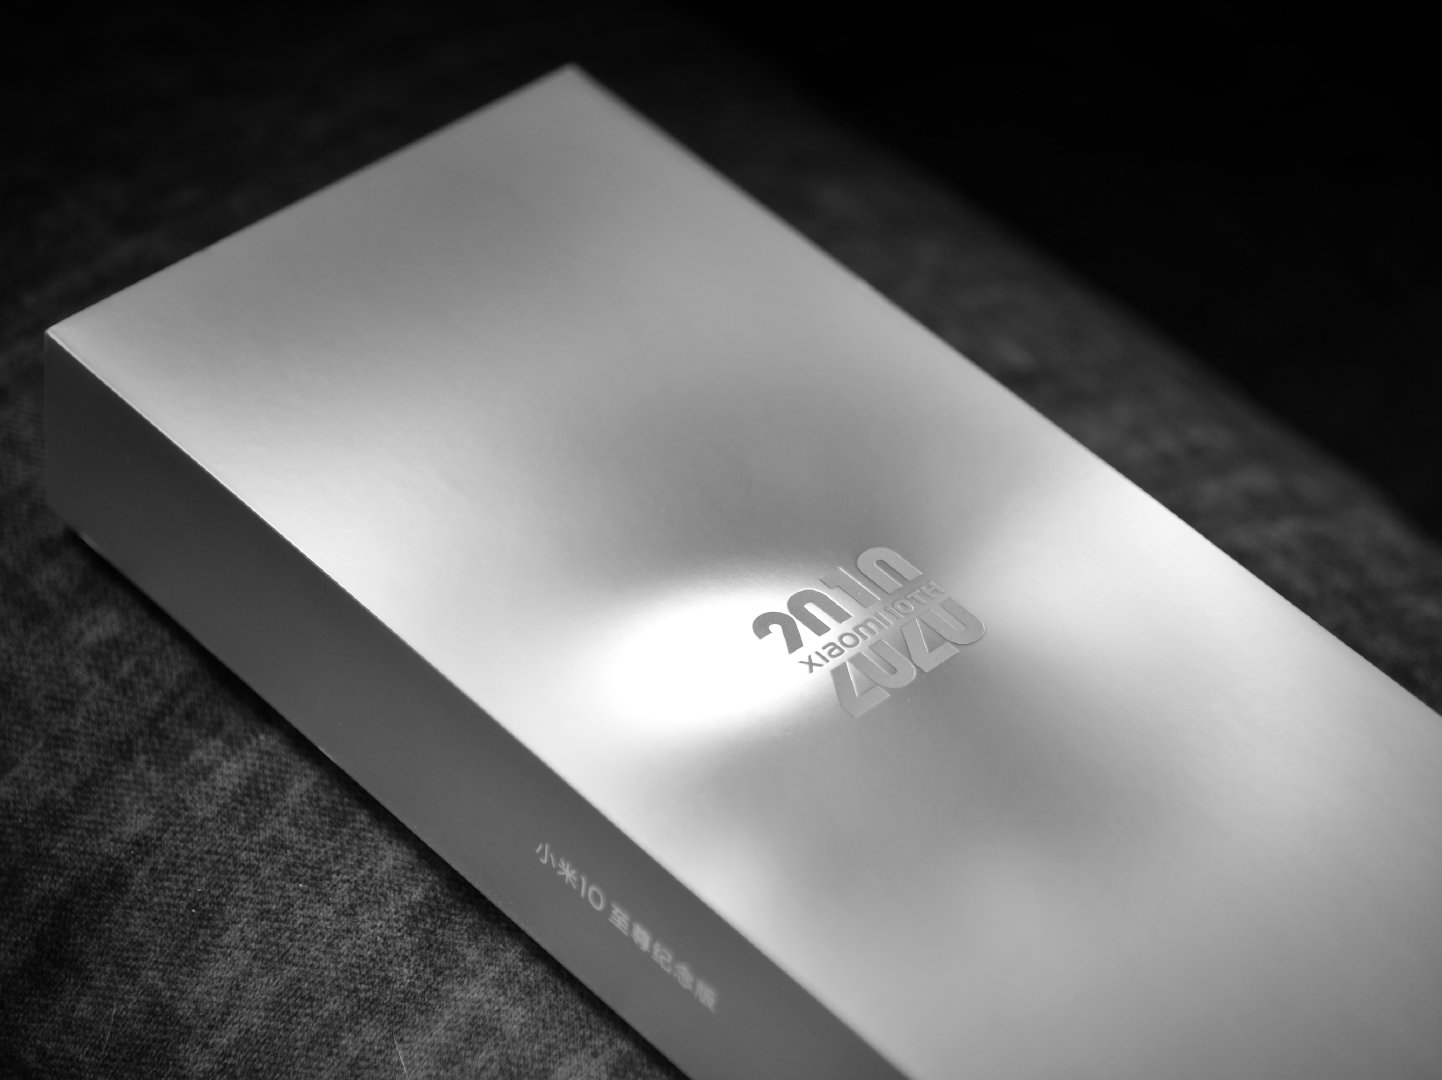 Sforum - Trang thông tin công nghệ mới nhất 006rUXYjly1ghnqstl6x1j31420u07wj Cận cảnh Mi 10 Ultra: Phiên bản kỷ niệm 10 năm siêu cao cấp của Xiaomi 